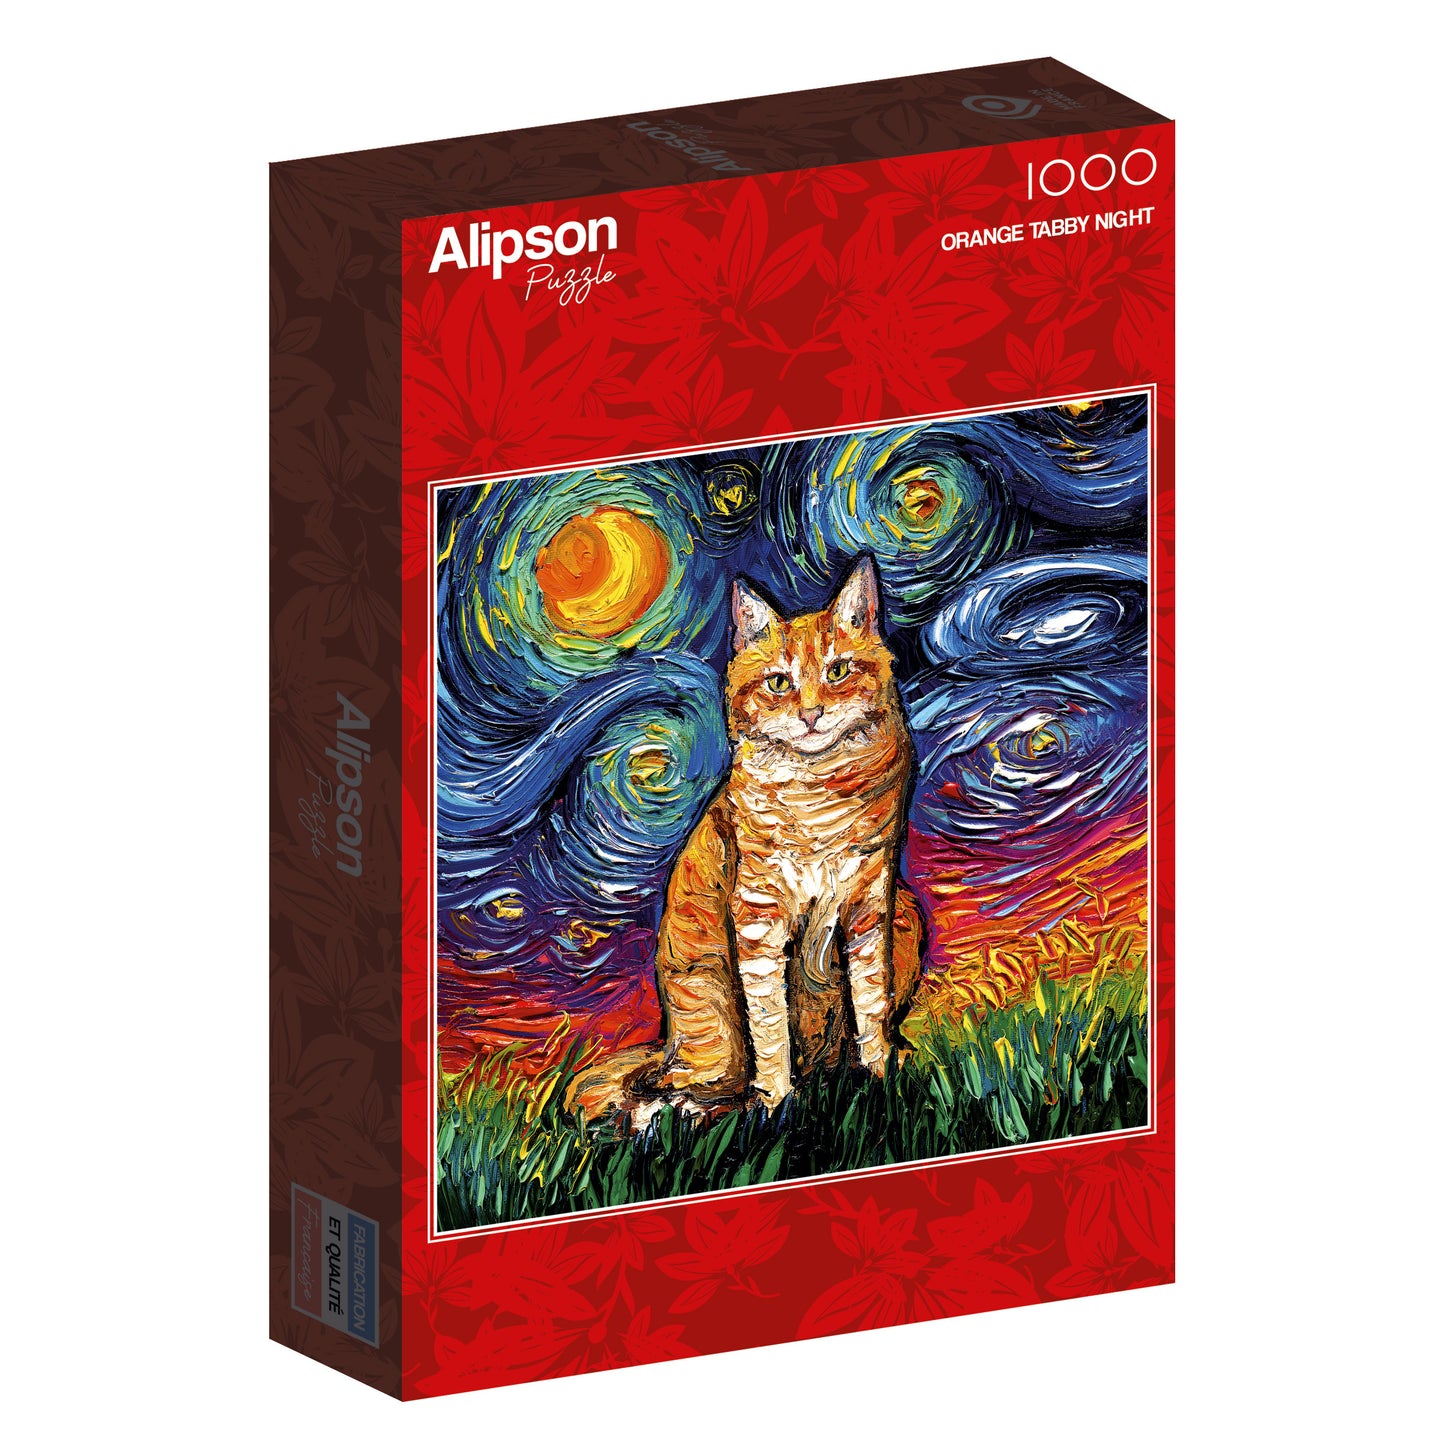 Alipson - Orange Tabby Night - 1000 Piece Jigsaw Puzzle